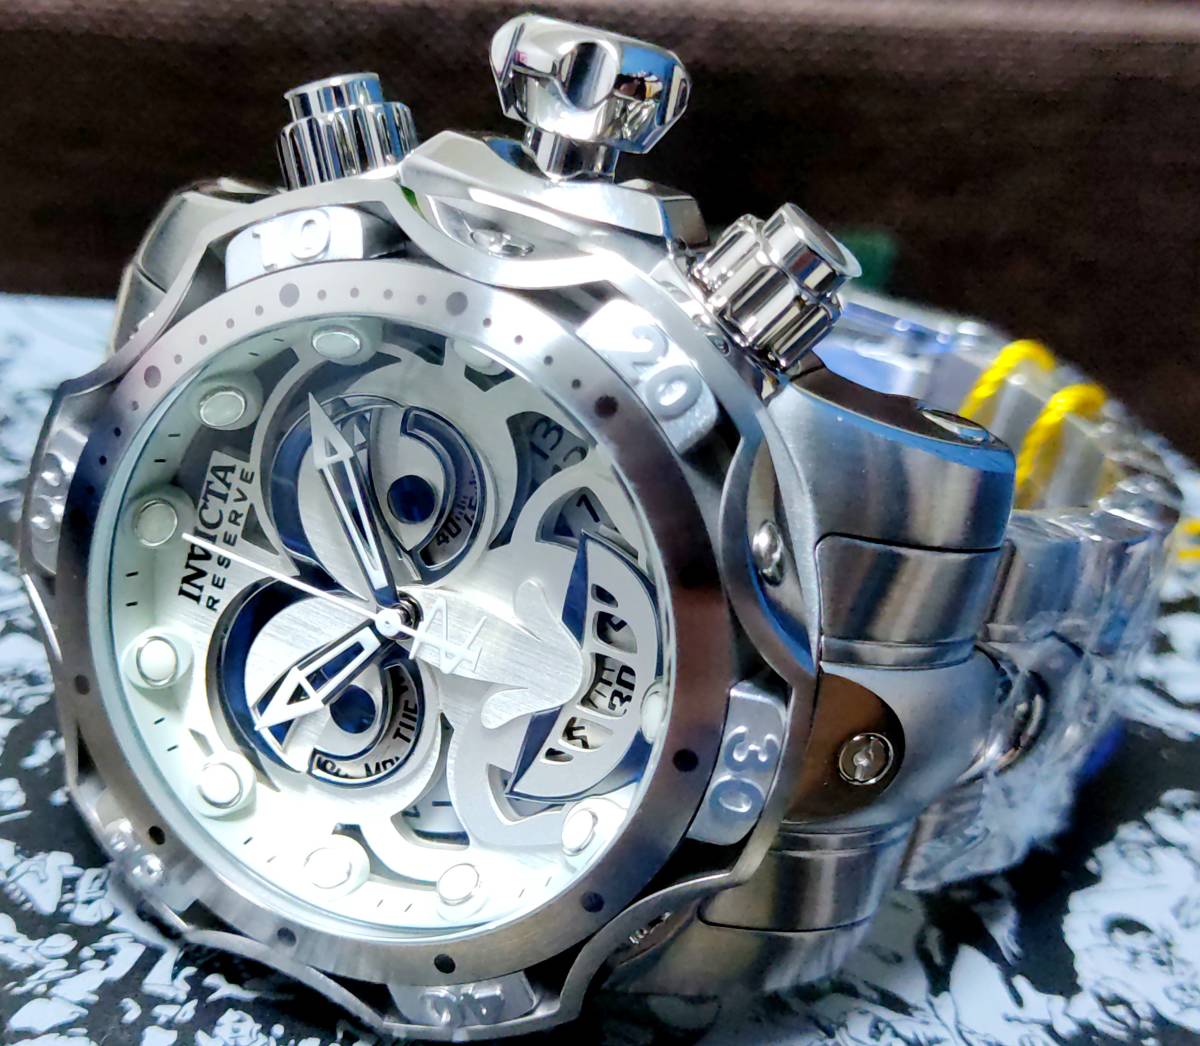 【新品】定価27万円 INVICTA インビクタ 高級腕時計 BATMAN バットマン JORKER ジョーカー シルバー×ホワイト フルメタル  世界限定4000個